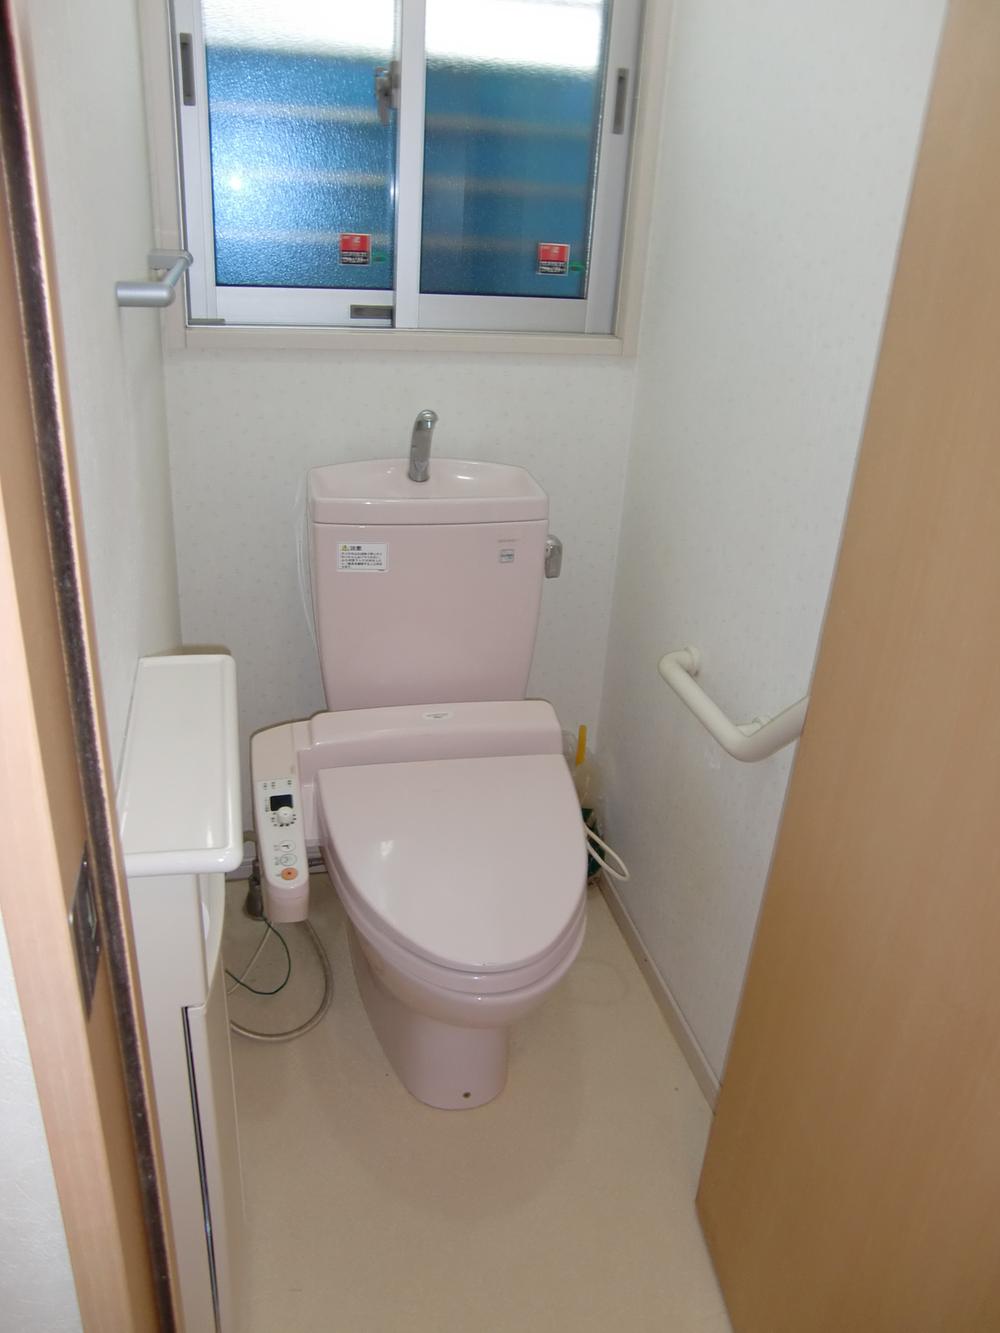 Toilet. Room (August 2011) shooting